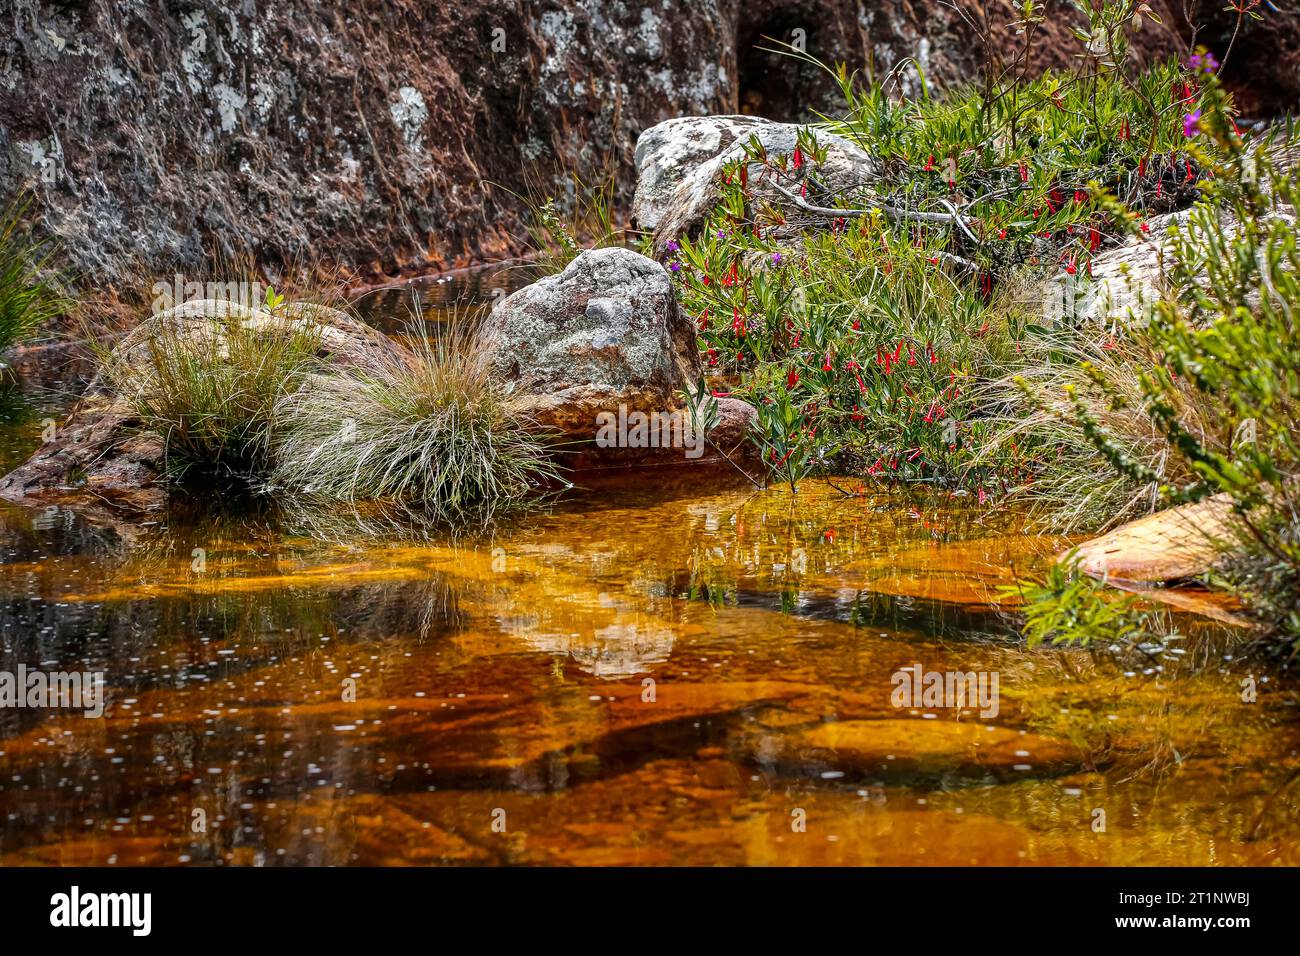 Piccolo laghetto idilliaco con acqua limpida e dorata, rocce e macchia fiorente, Parco statale Biribiri, Minas Gerais, Brasile Foto Stock